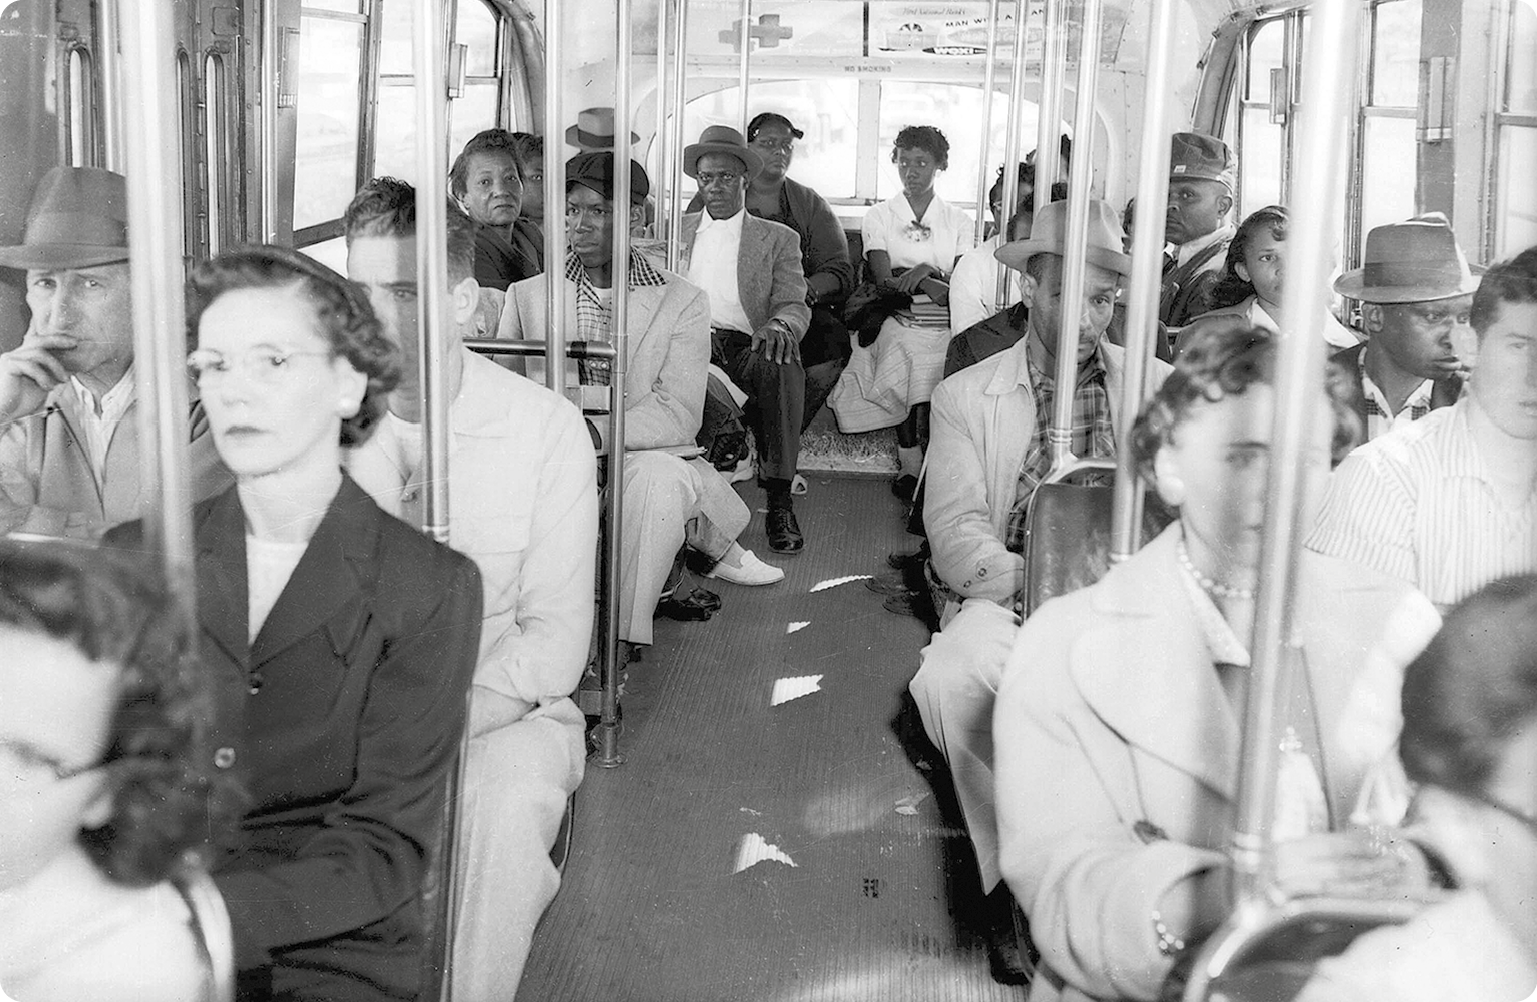 Fotografia em preto e branco. Interior de um ônibus. Na parte da frente, mulheres e homens brancos sentados. Na parte traseira, mulheres e homens negros sentados.